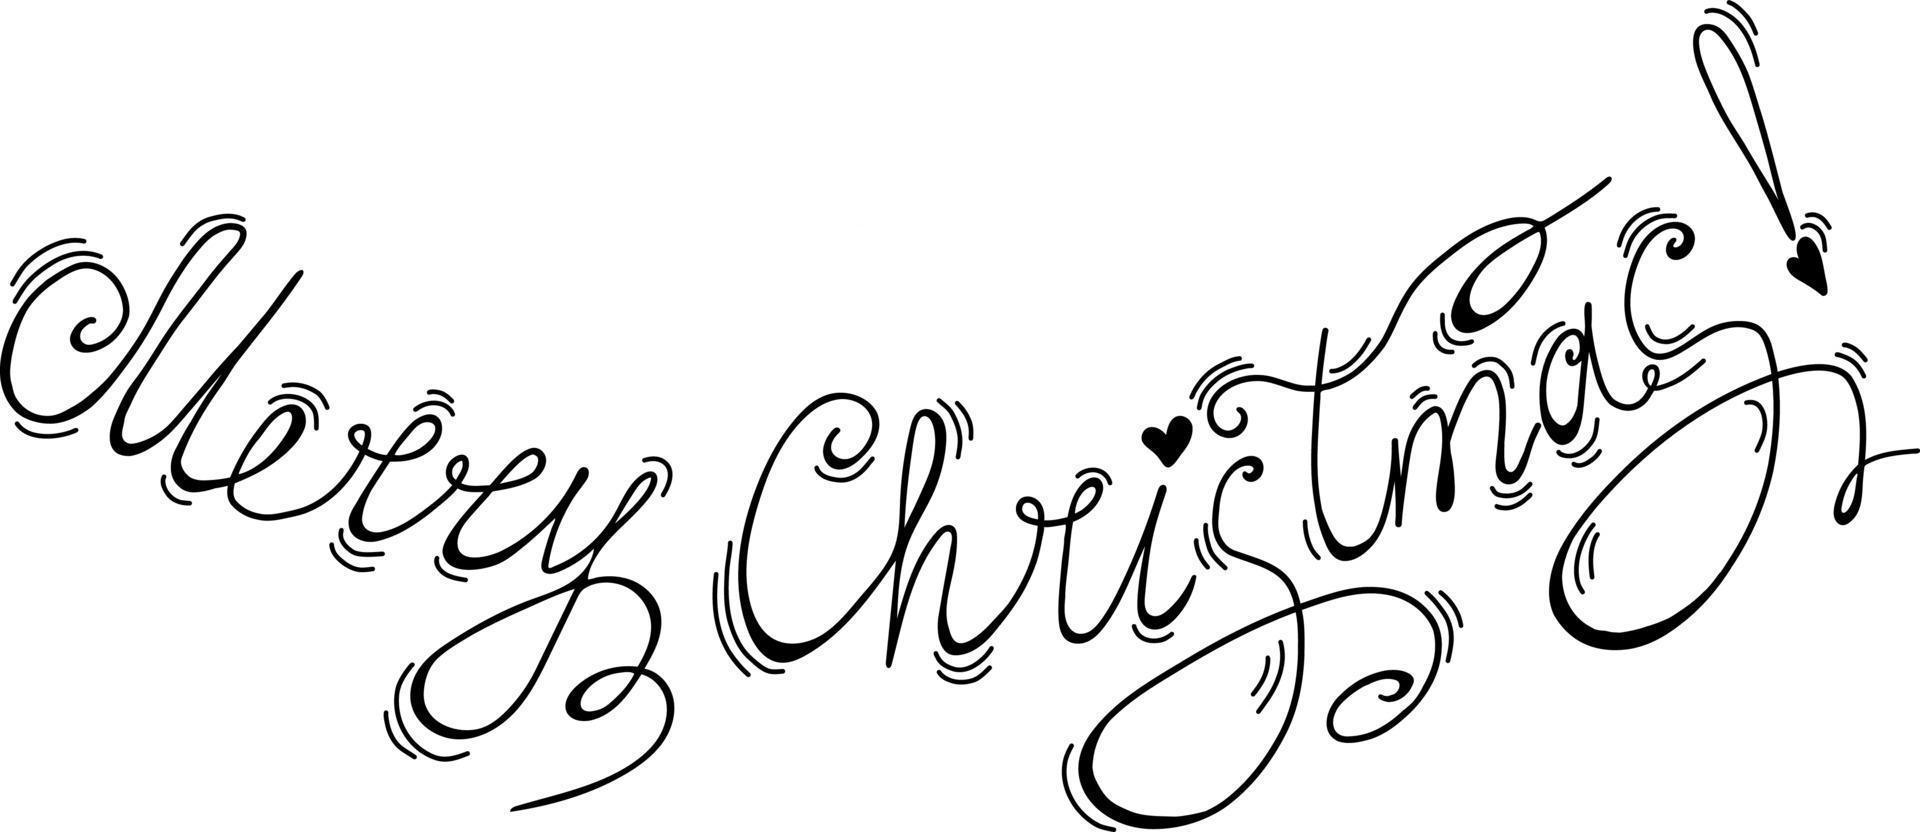 Schriftzug Frohe Weihnachten. Vektor-Illustration. handschriftliche zeichnung vektor